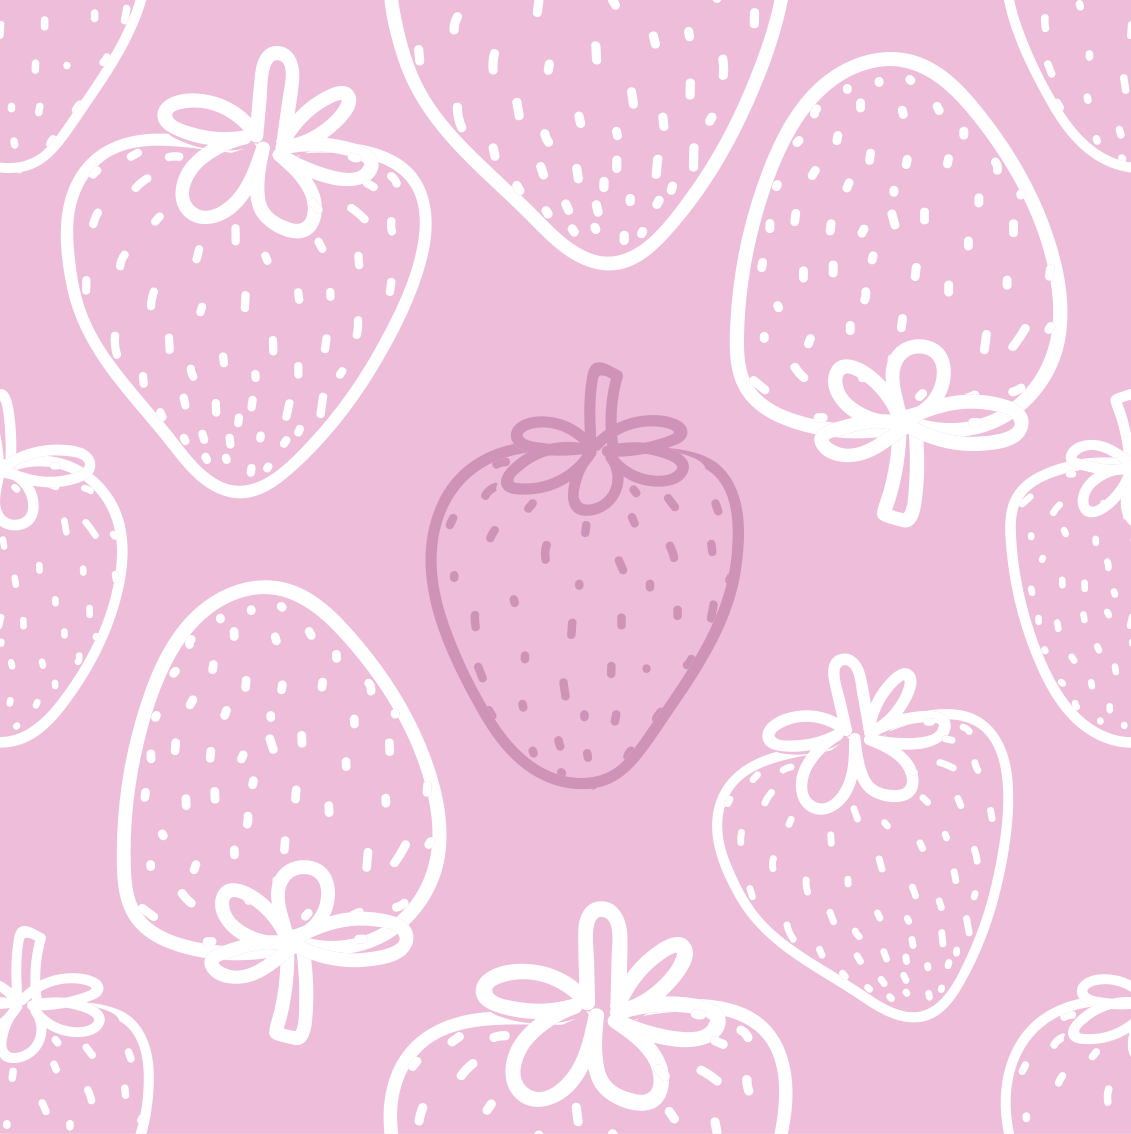 Phong cách hoàn hảo cho bất kỳ ai yêu thích không gian trái cây, mẫu dâu hồng liên tục không gian vải trái cây từ TenStickers chắc chắn sẽ khiến bạn phải trầm trồ. Thiết kế đầy màu sắc và sinh động này sẽ làm cho bất kỳ chủ đề nào của bạn cũng trở nên sống động và thu hút hơn.